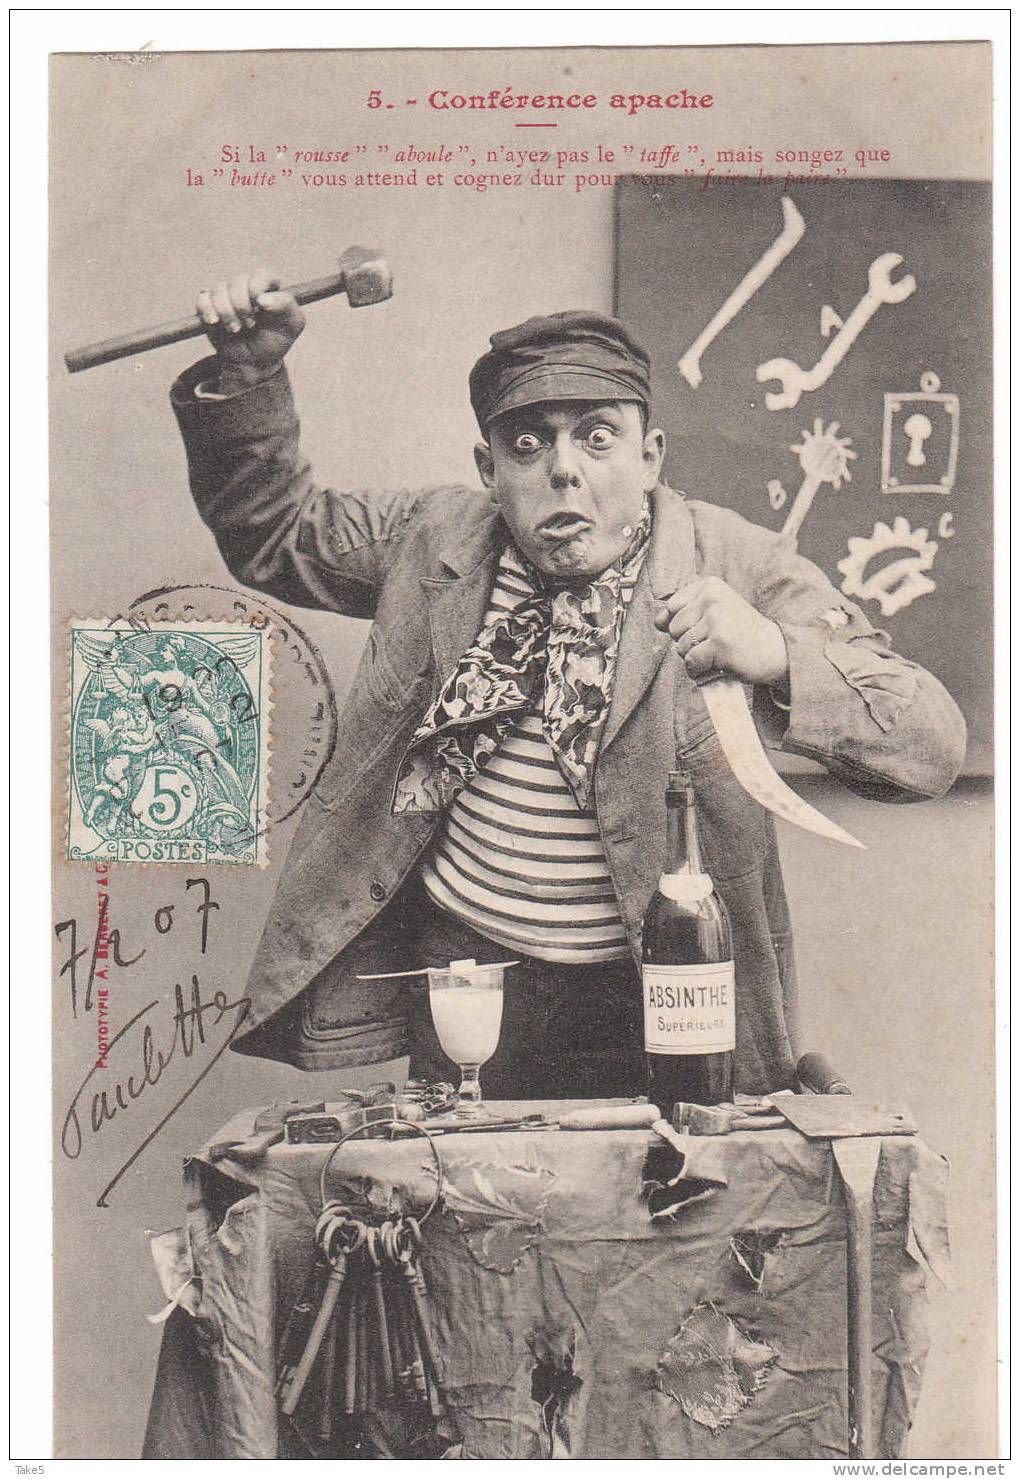 Фотография: Как апаши, французские гопники начала XX века, повлияли на мировую культуру №2 - BigPicture.ru